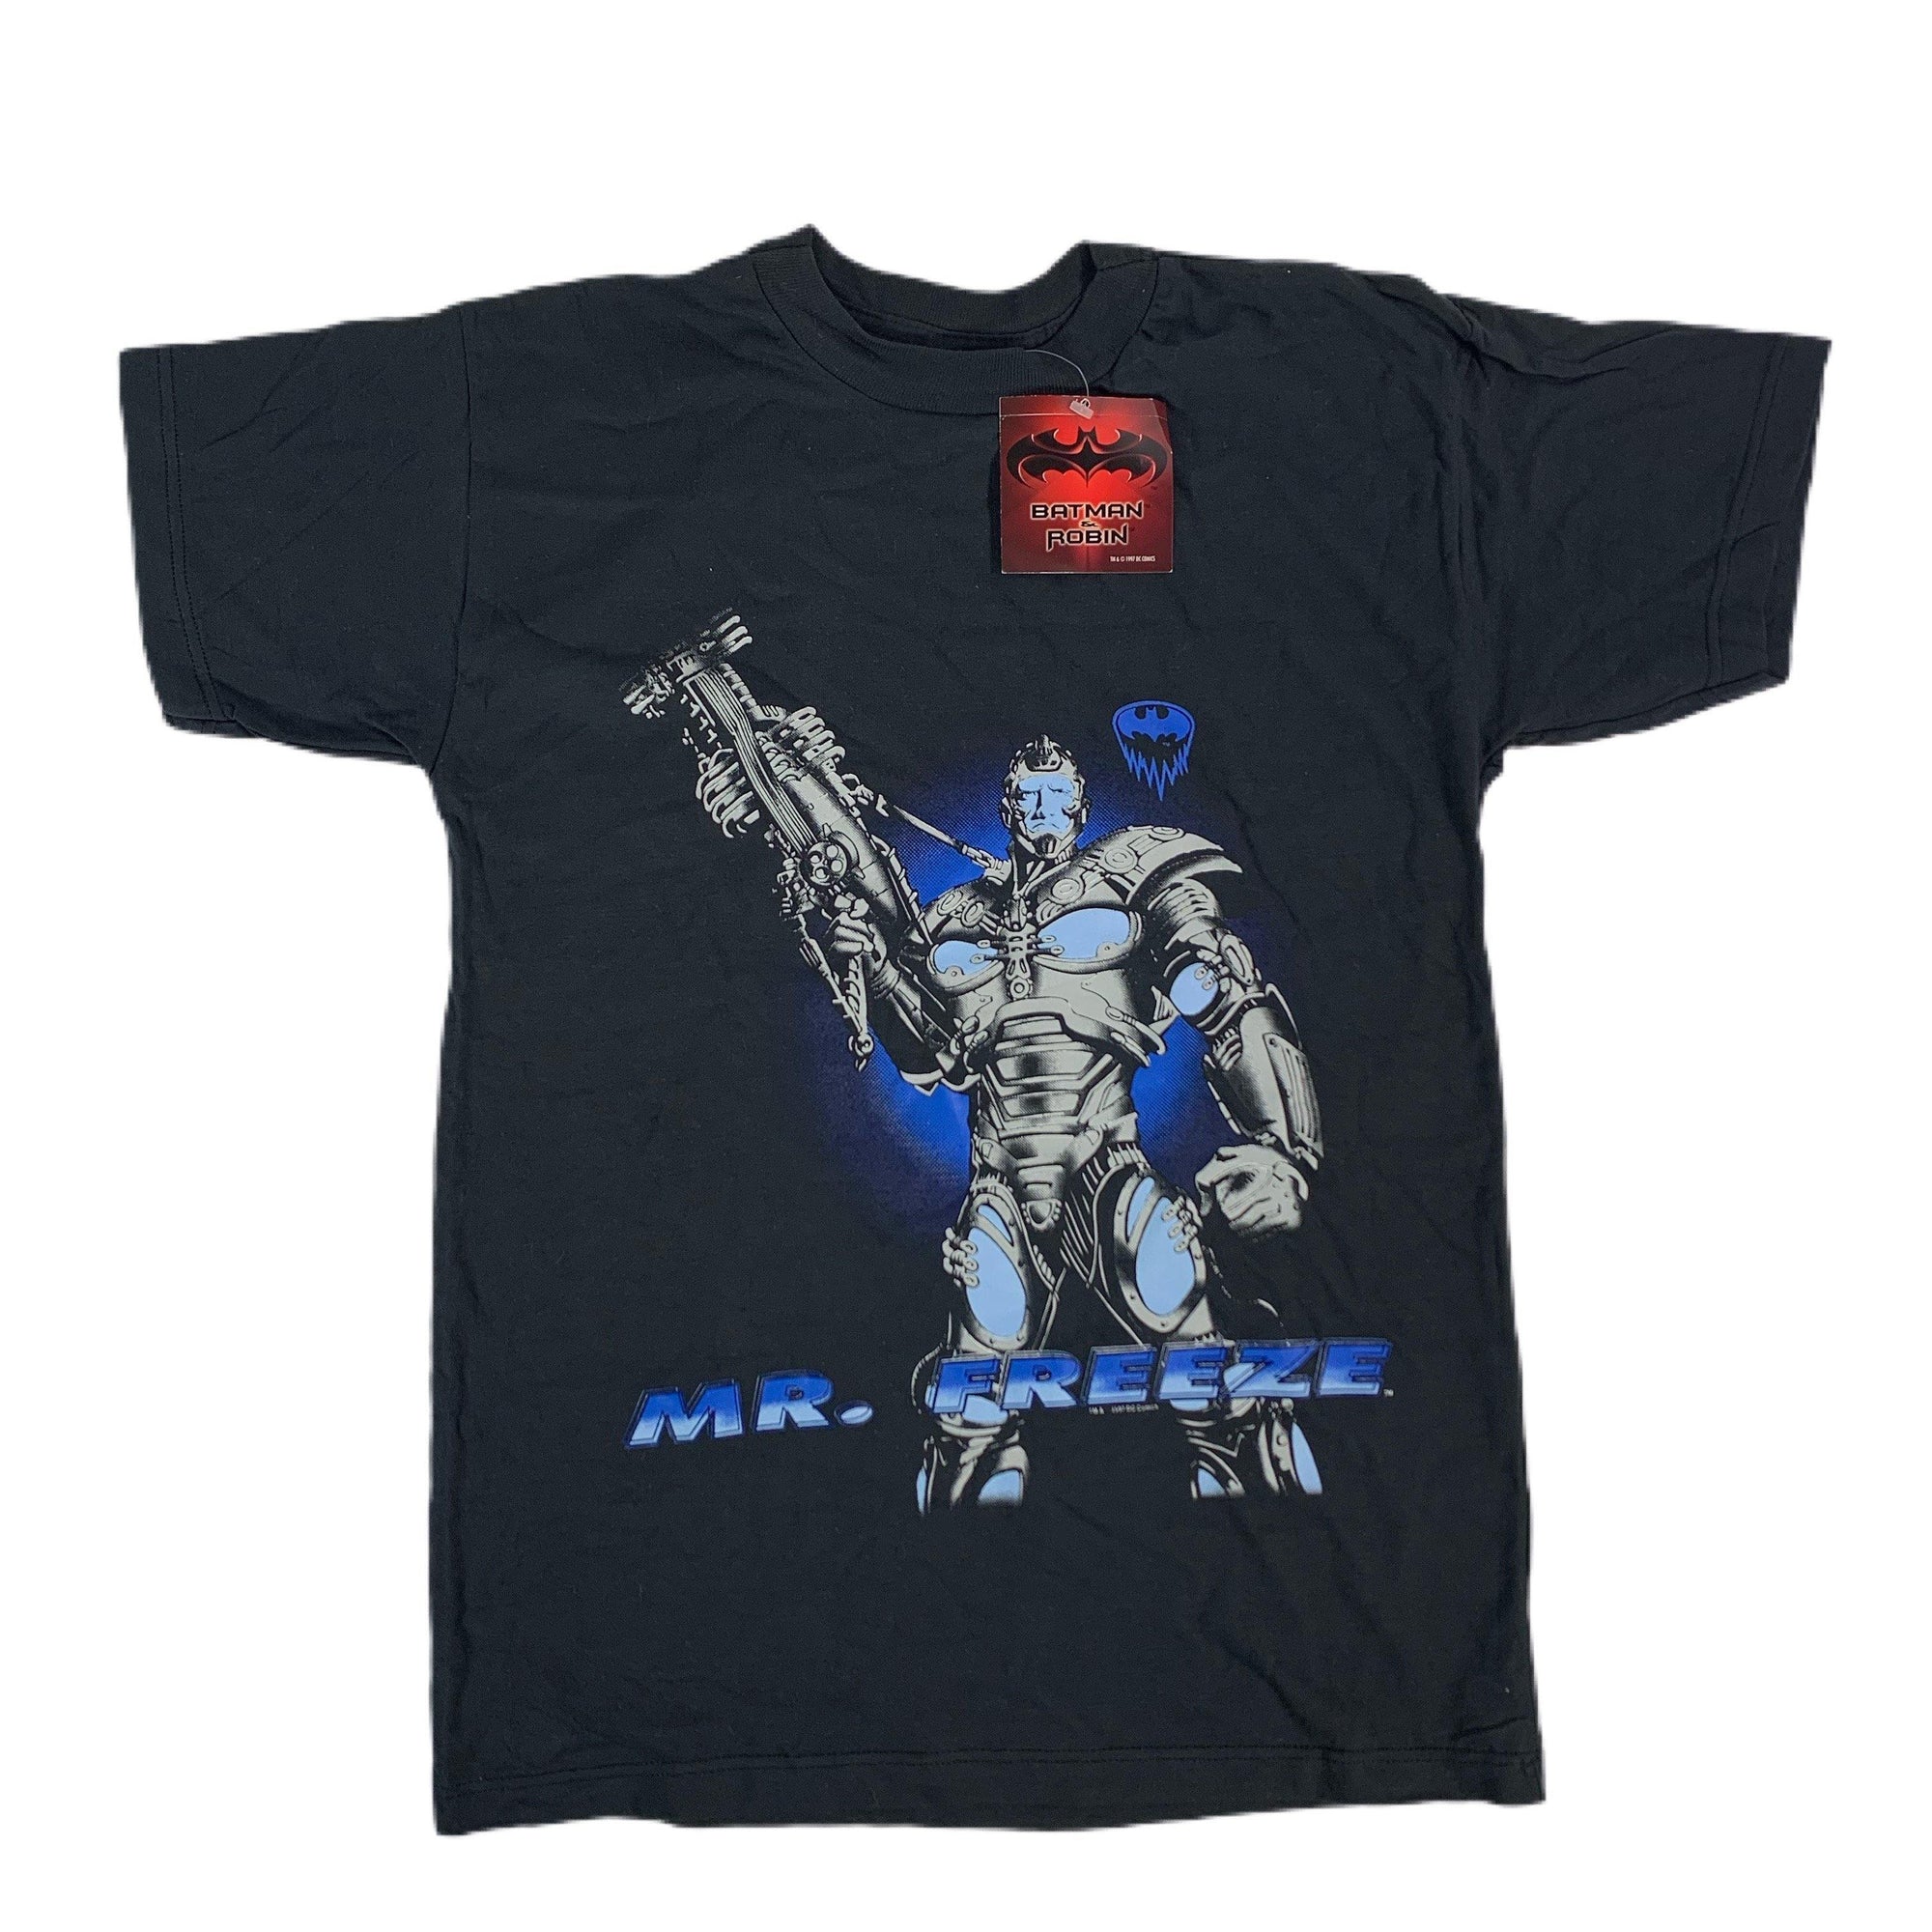 Vintage Batman & Robin "Mr. Freeze" T-Shirt - jointcustodydc